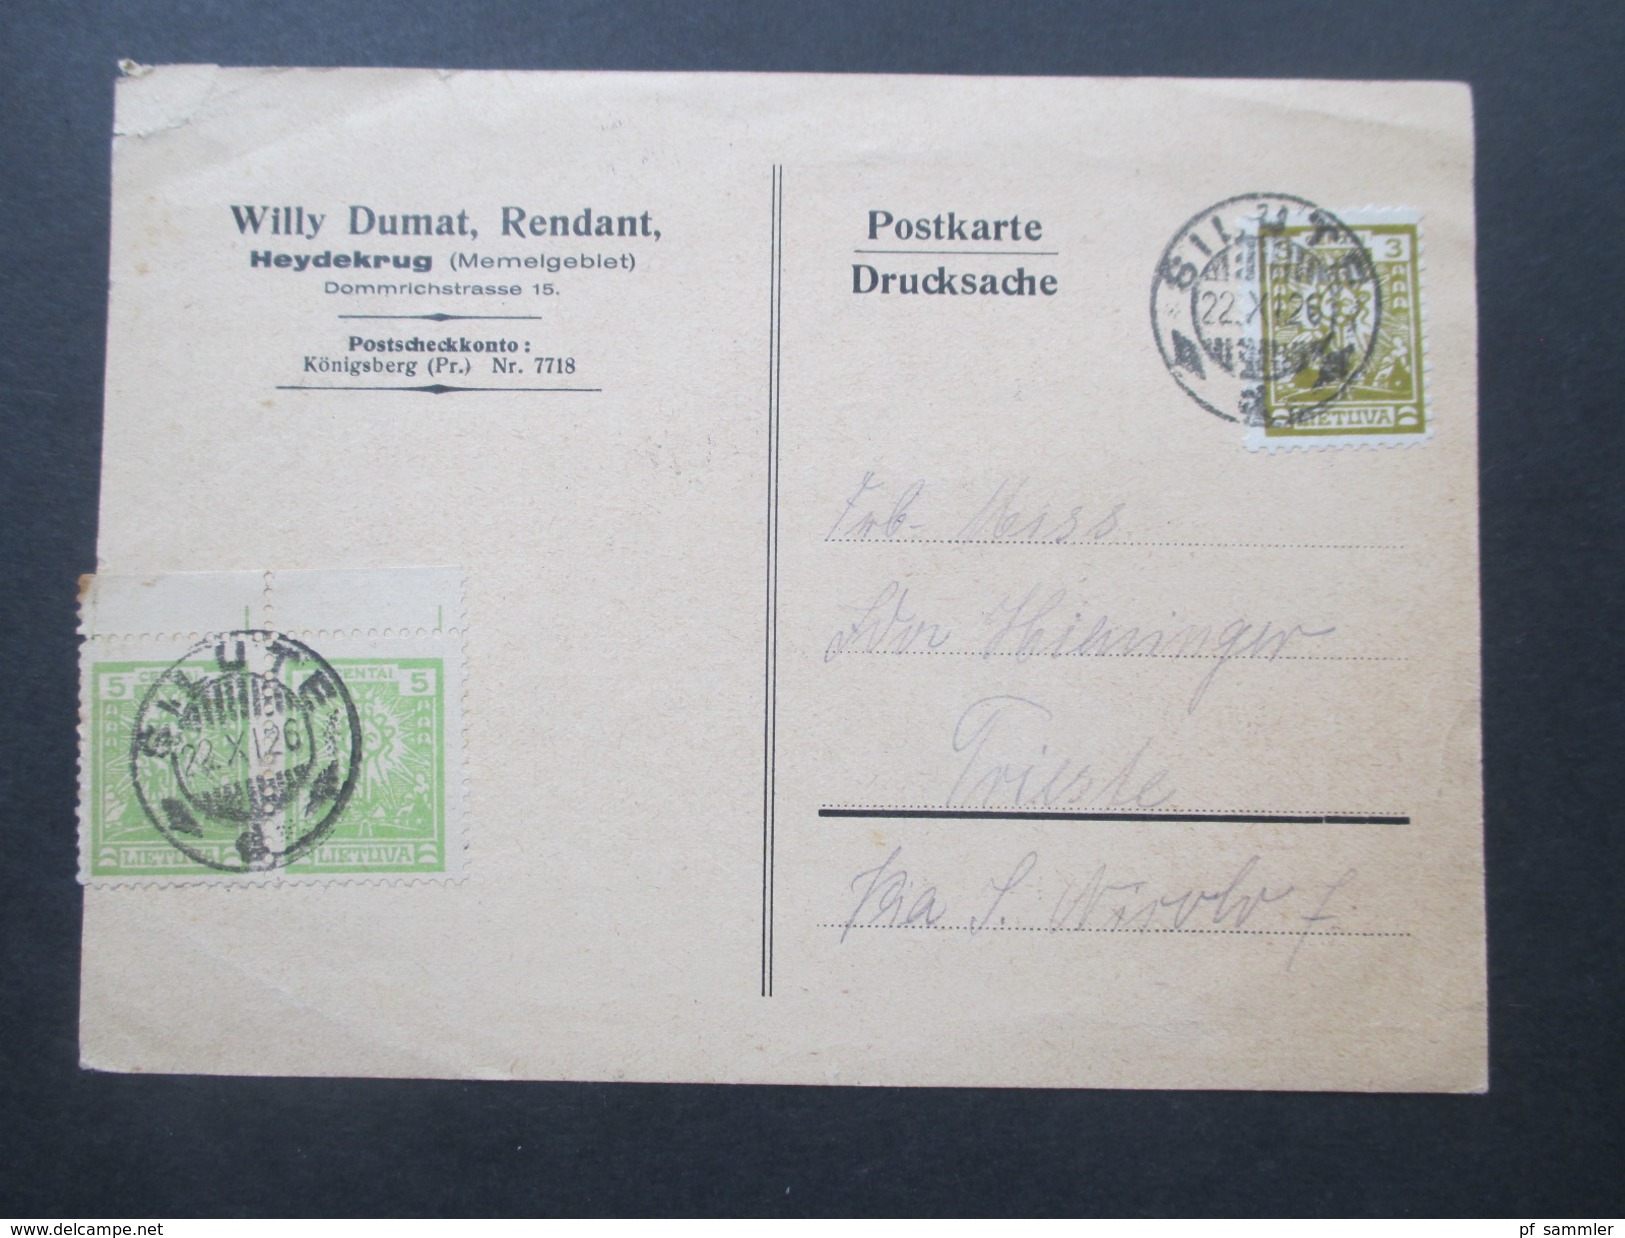 Deutsches Reich Memelgebiet 1926 Postkarte Silute. Willy Dumat, Rendant. Heydekrug. Briefmarkenhändler. Nach Trieste - Memelland 1923